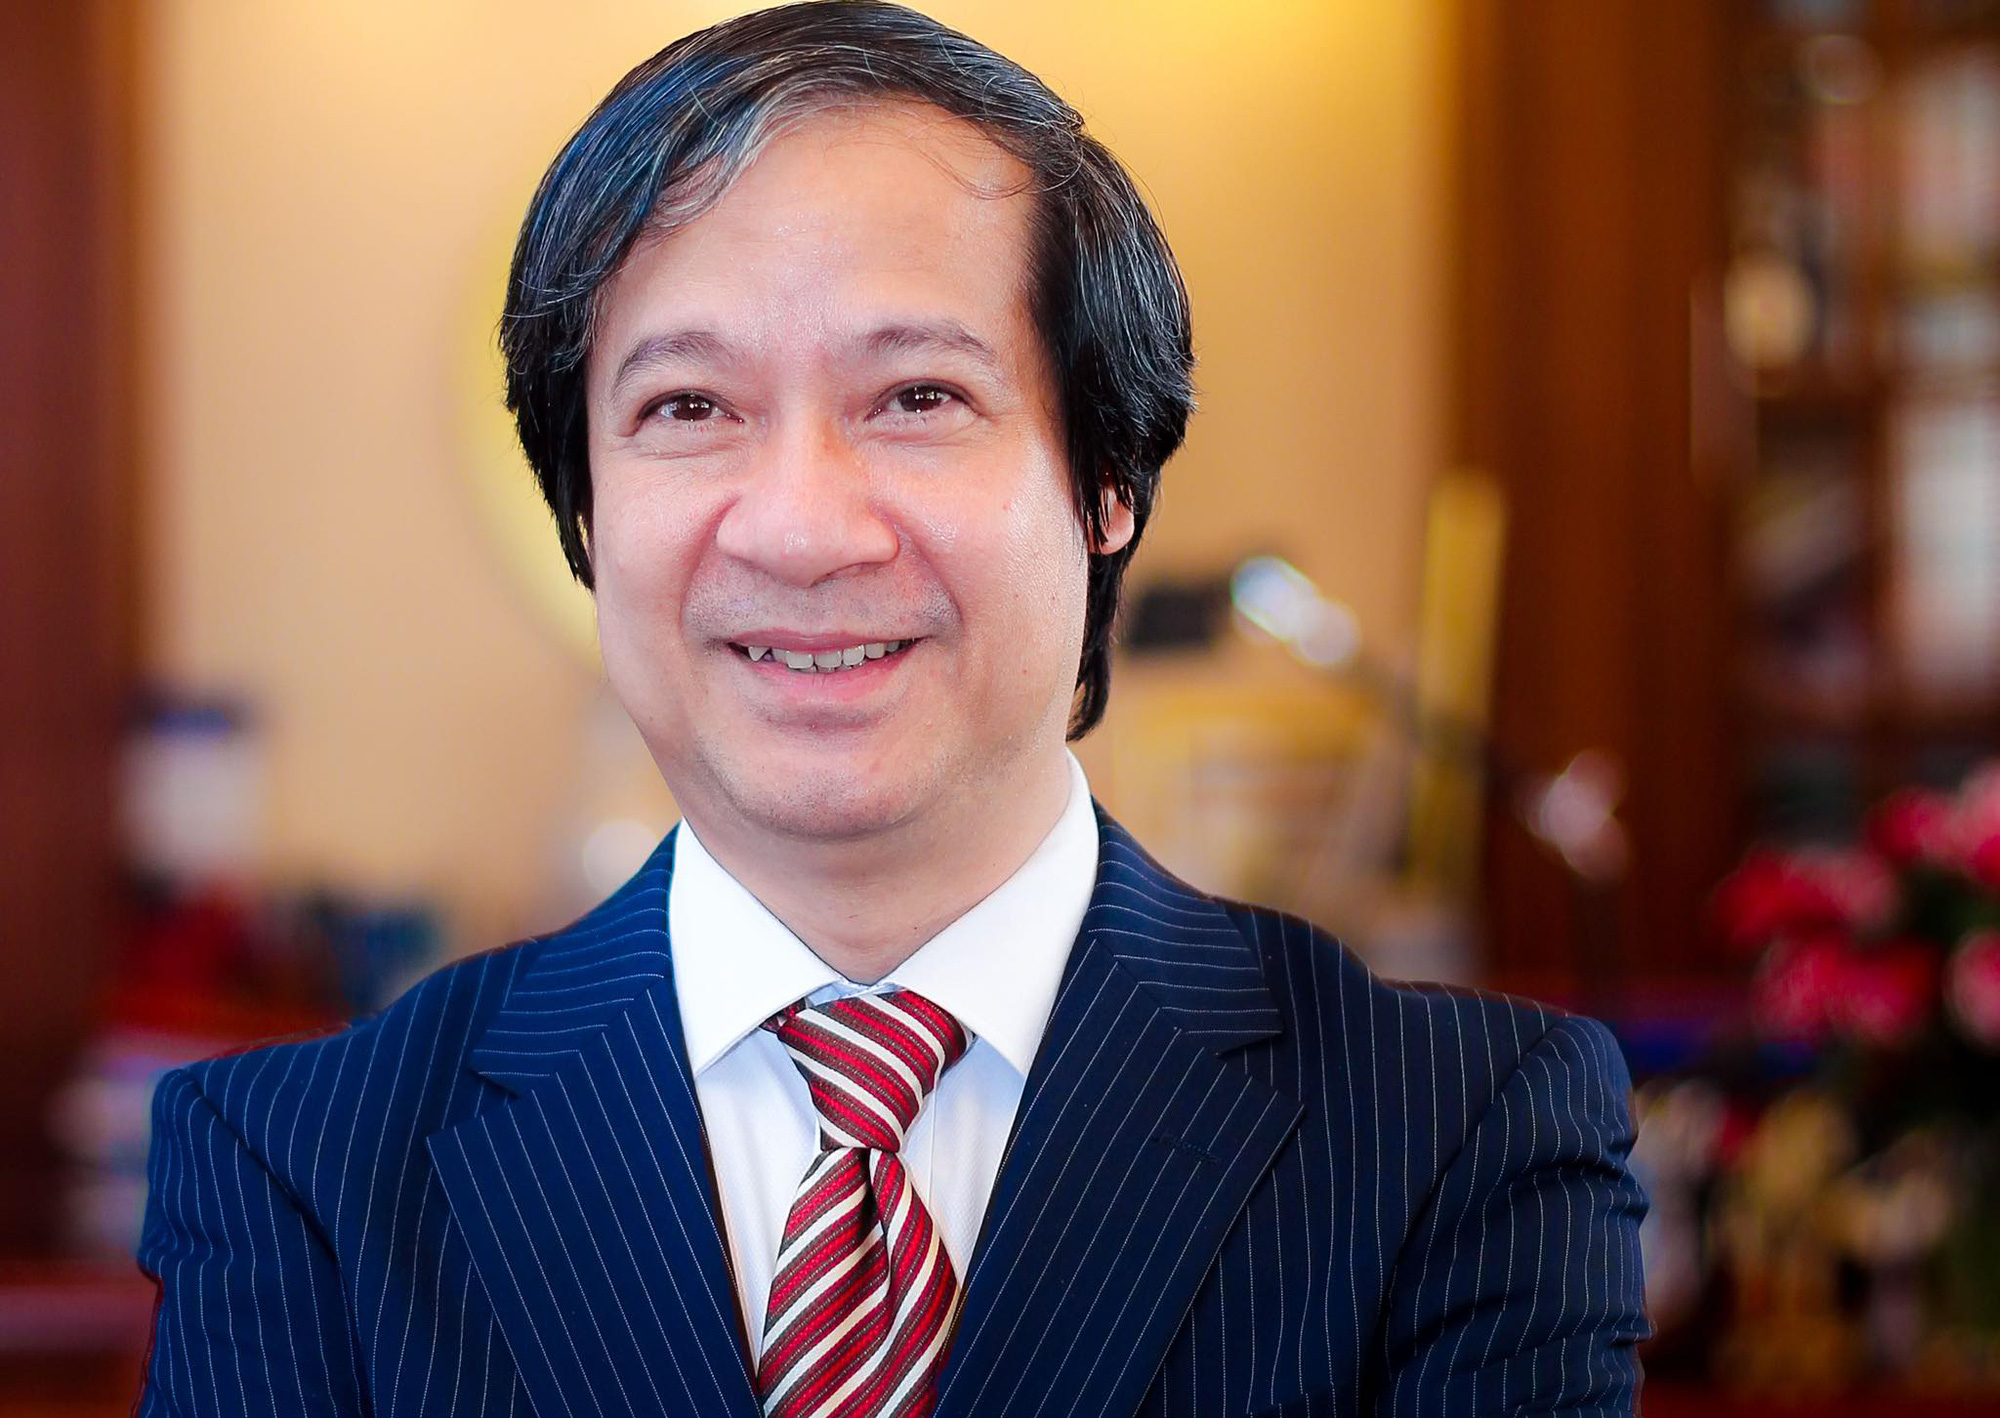 Tân Bộ trưởng Bộ GD-ĐT Nguyễn Kim Sơn gởi thư cho nhà giáo cả nước